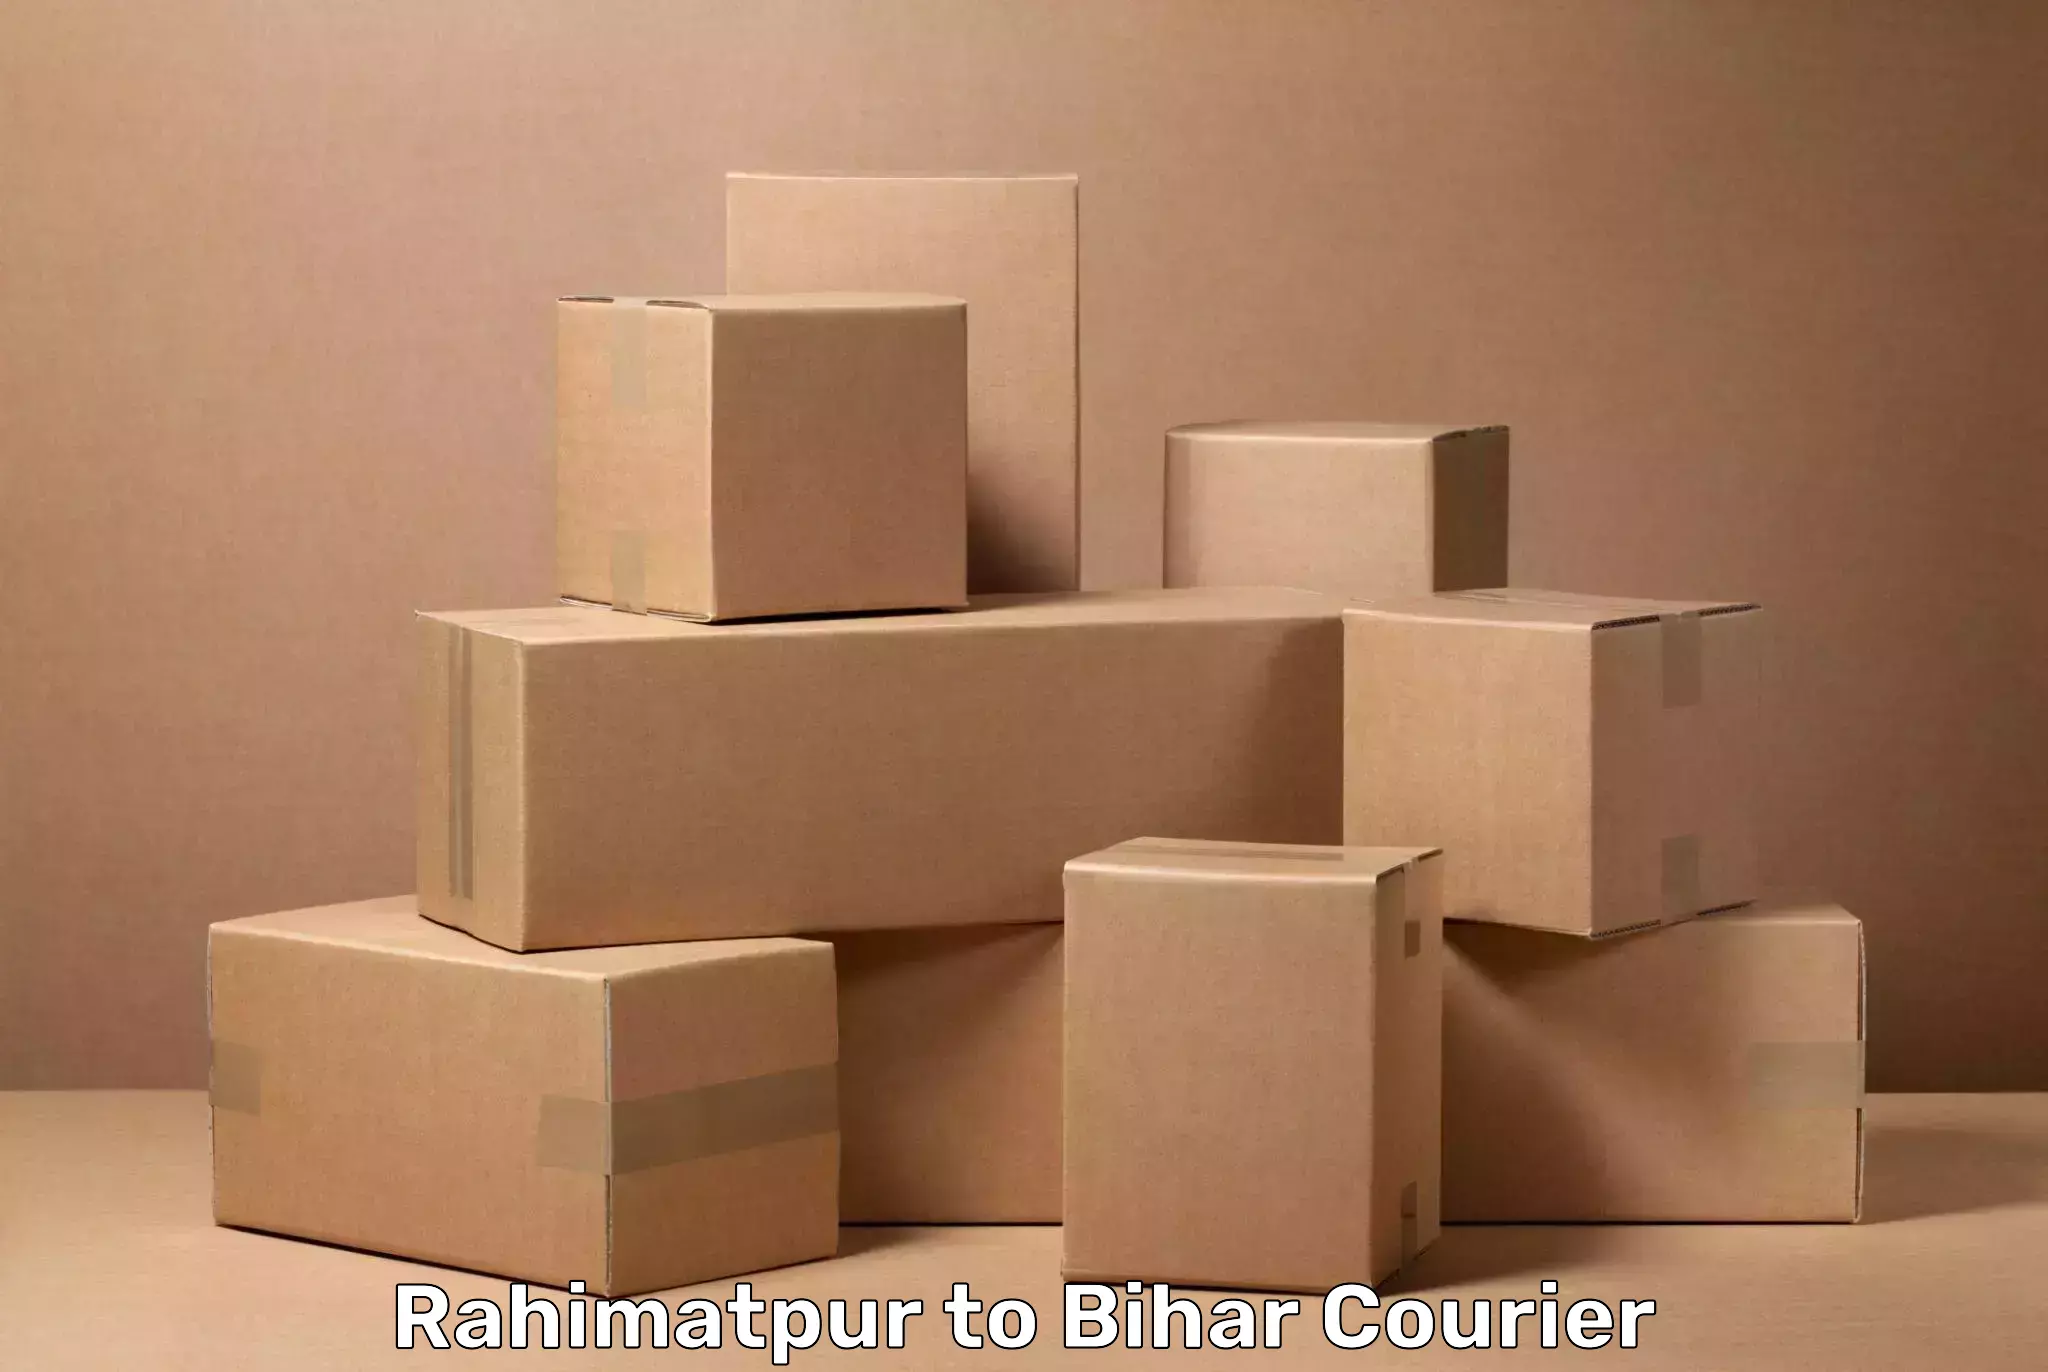 Baggage transport calculator Rahimatpur to Bihar